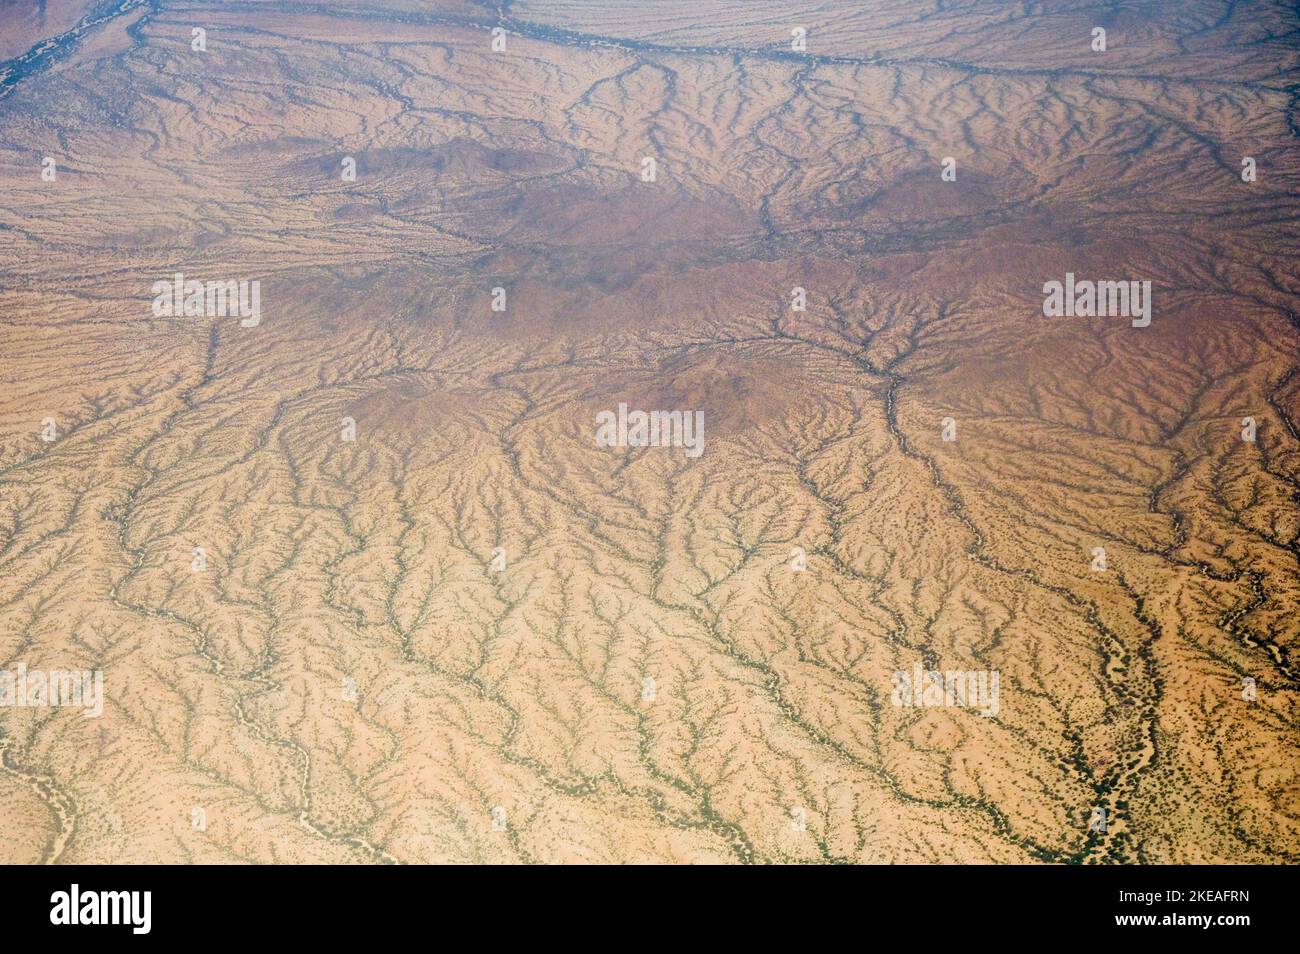 KENIA, Turkana, vista aérea, sequía / KENIA, Turkana, Luftaufnahme, Dürre Foto de stock